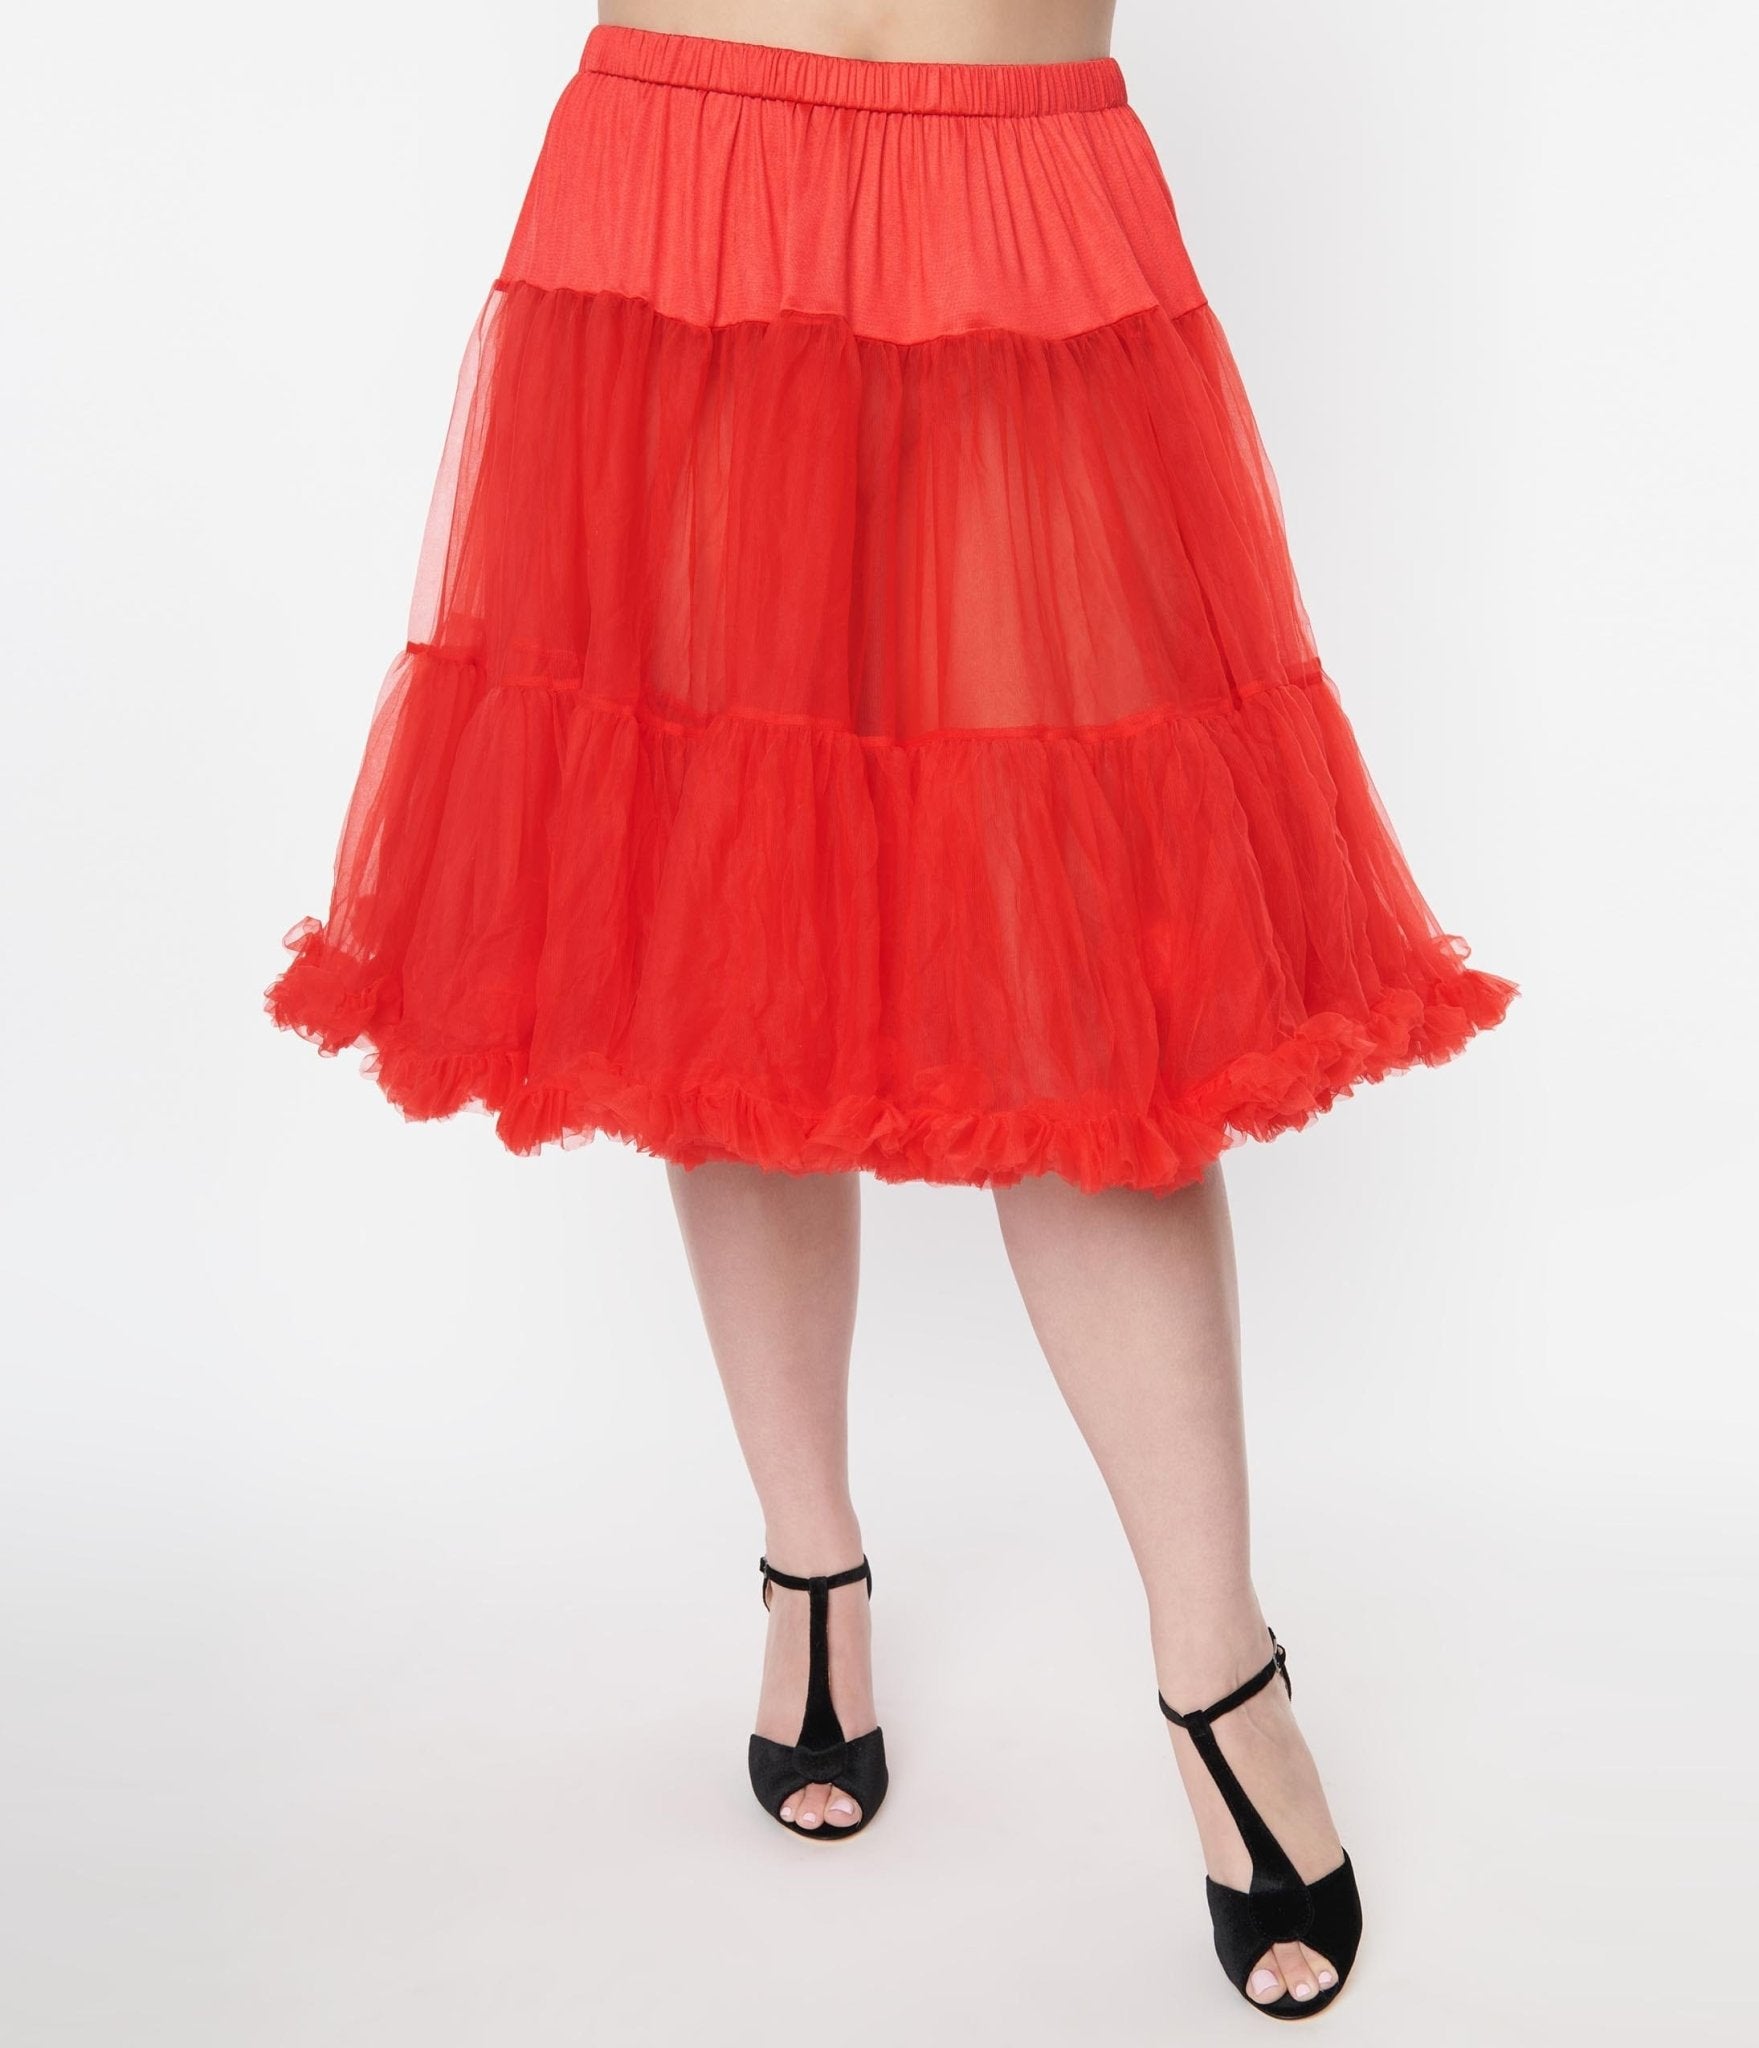 https://www.unique-vintage.com/cdn/shop/products/unique-vintage-plus-size-red-retro-style-ruffled-petticoat-316199.jpg?v=1703100395